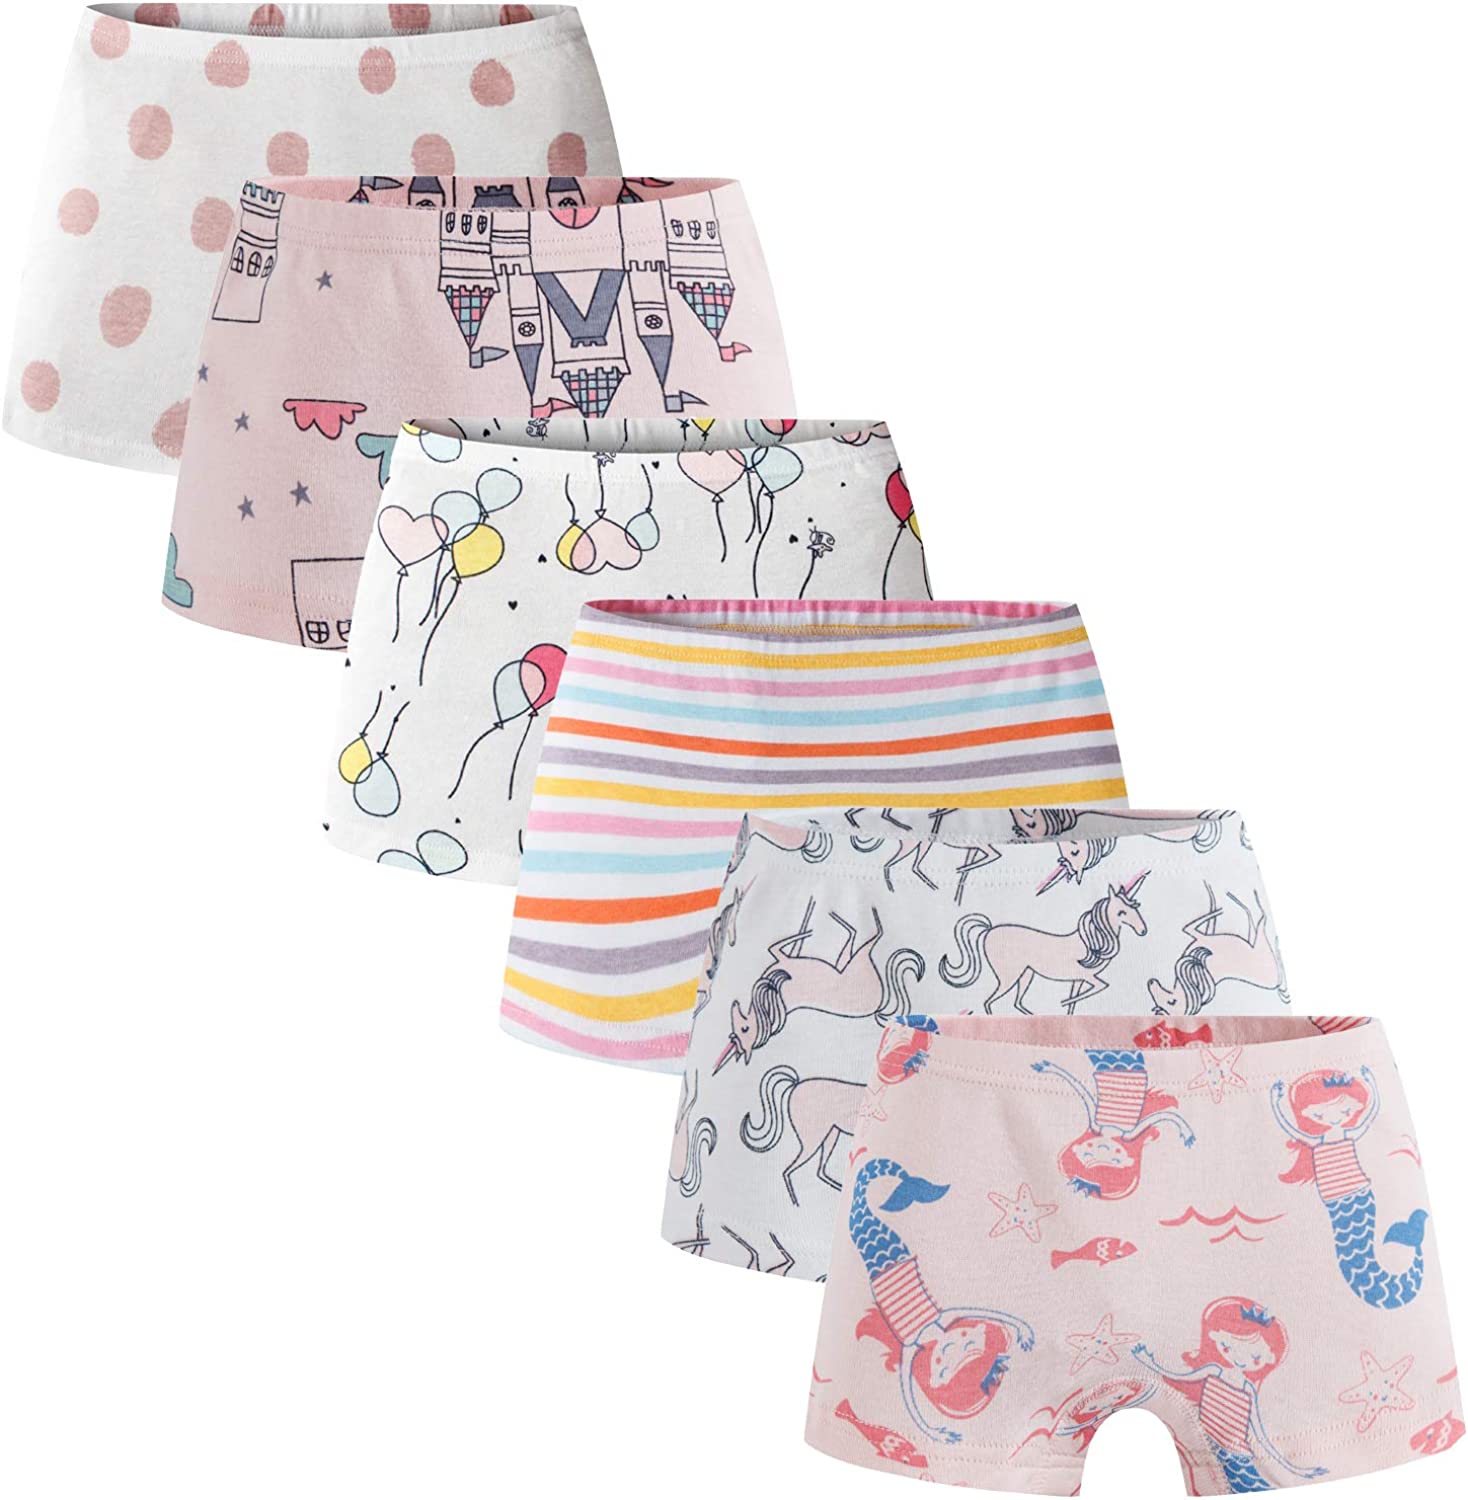 Boboking Soft Cotton Girls' Panties Boyshort Little Girls' Underwear  Toddler Und